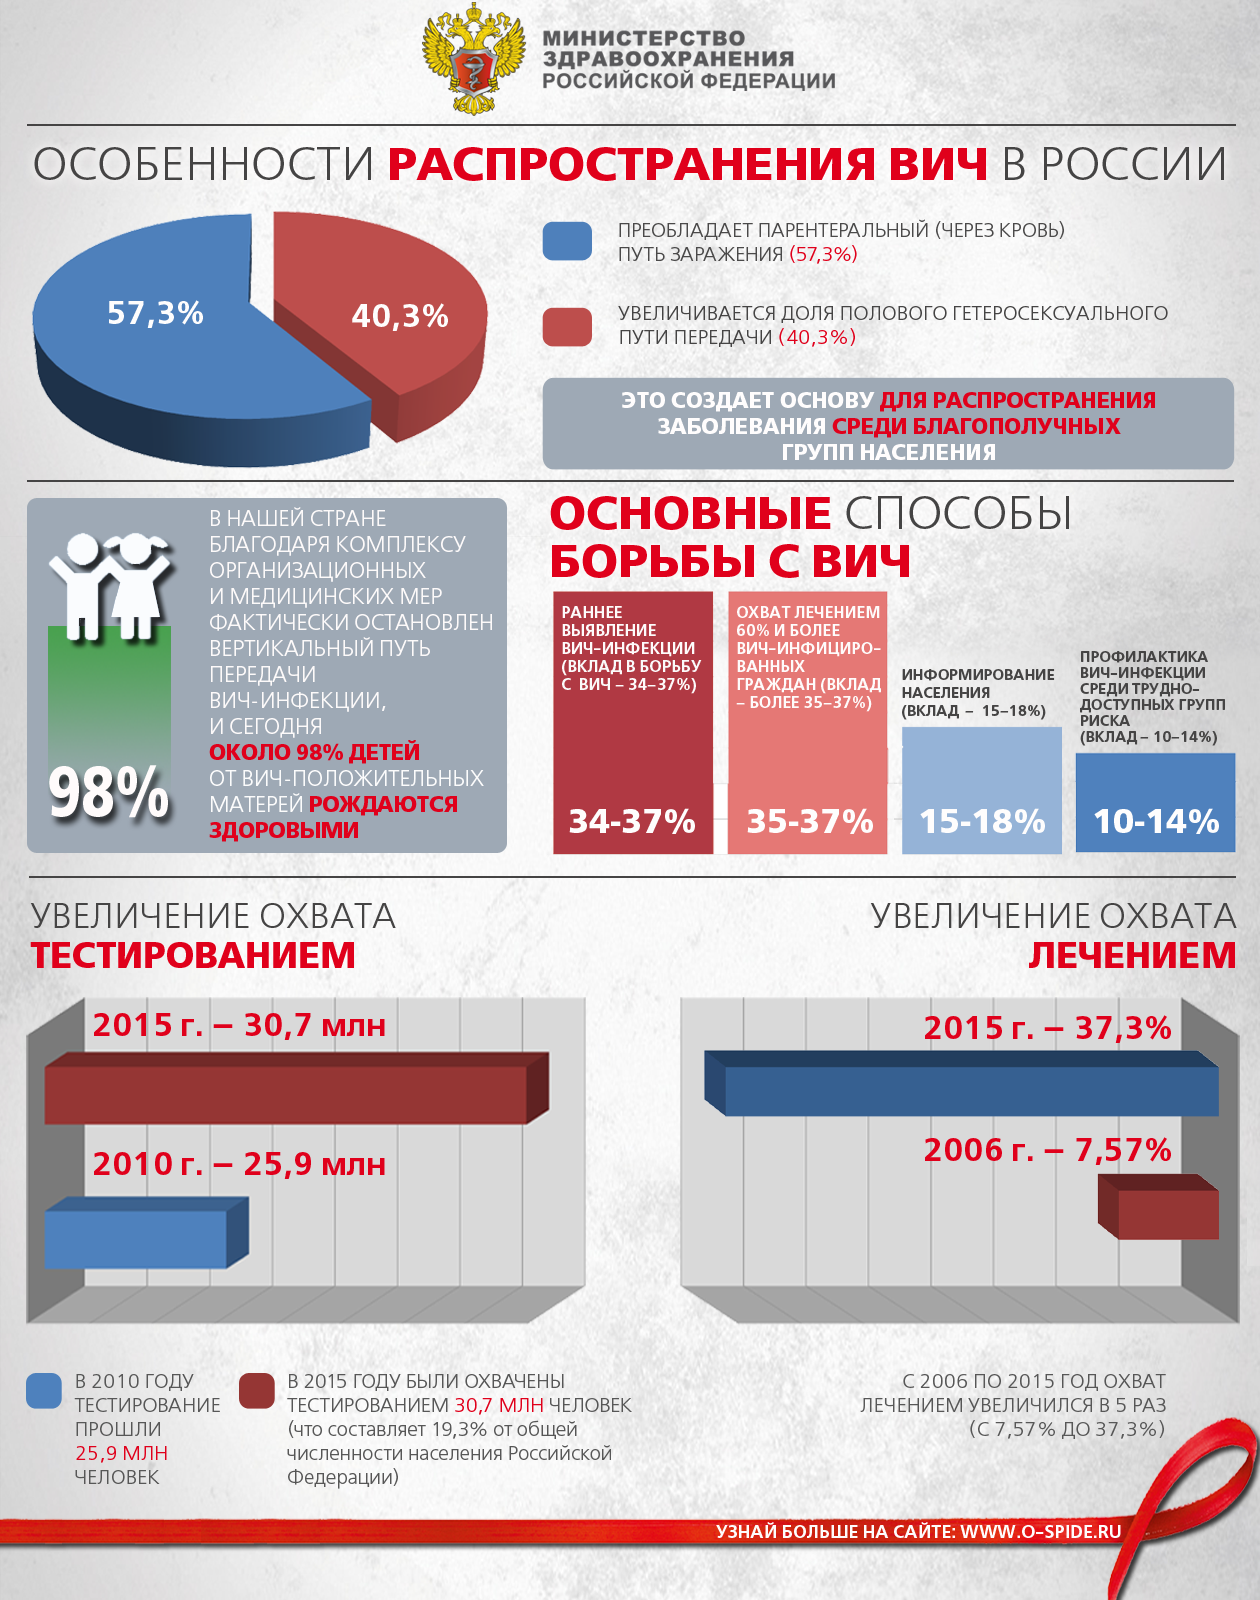 Особенности распространения ВИЧ в России